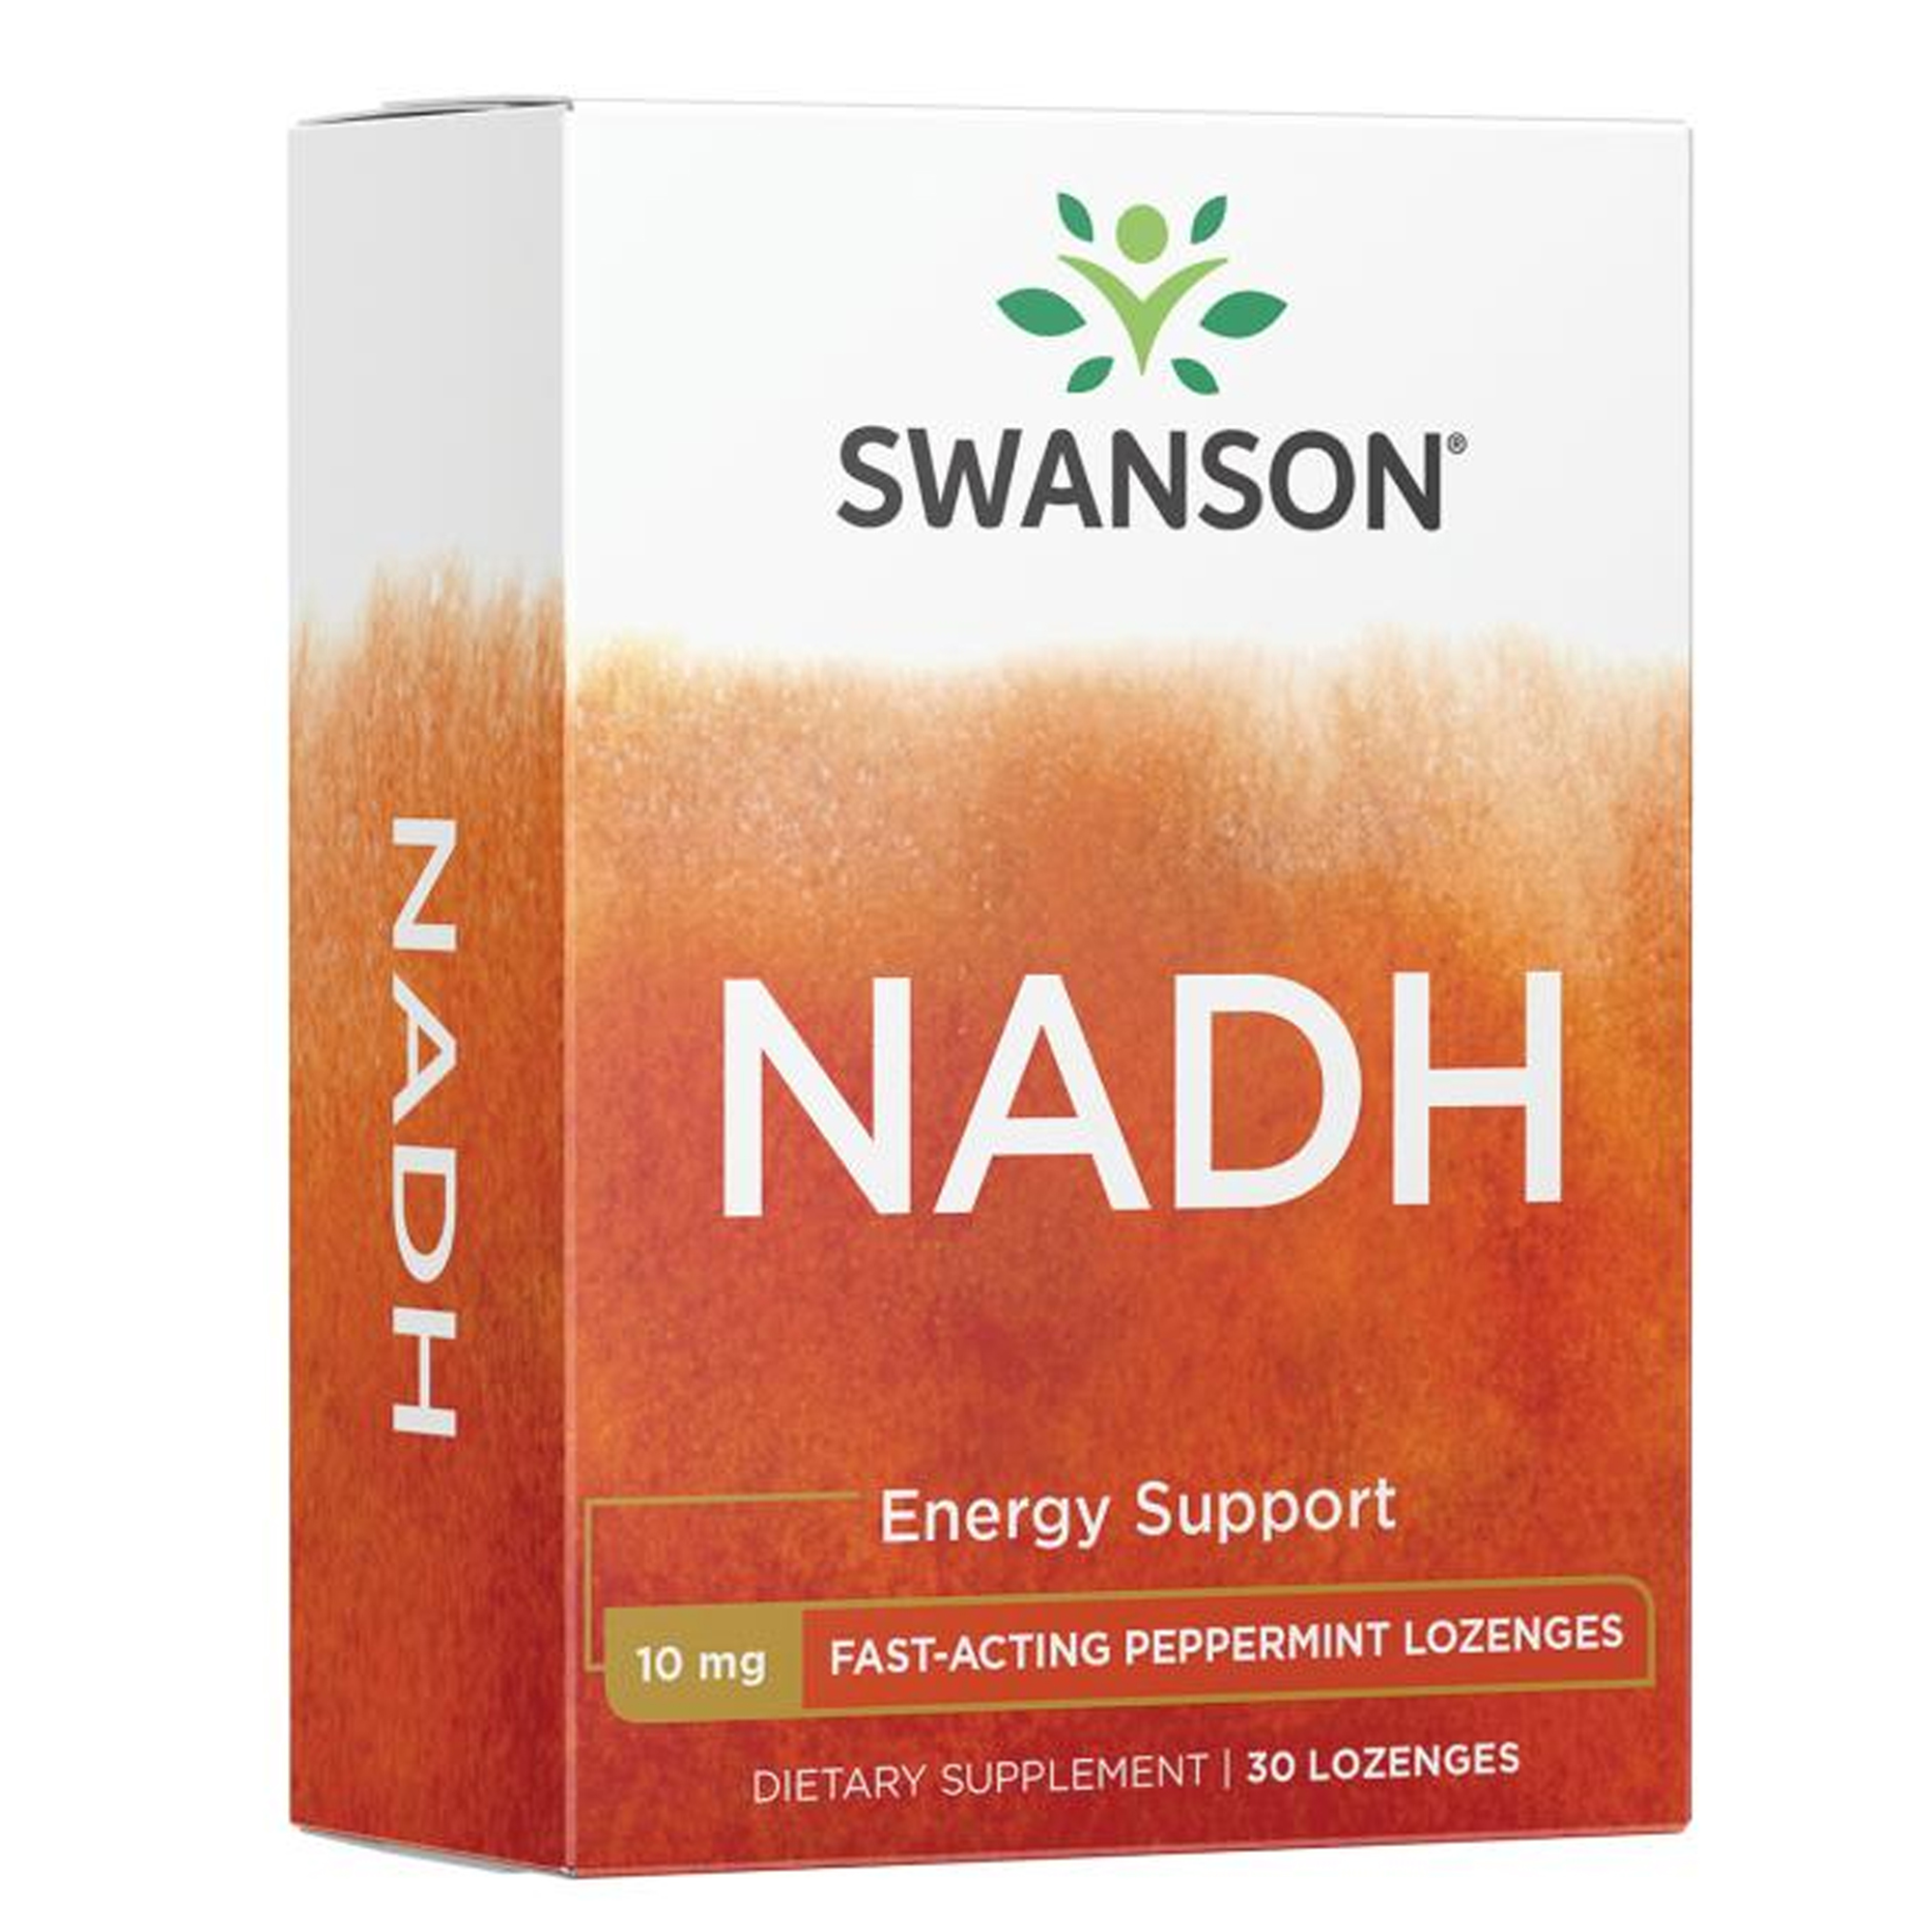 Swanson Maximum Strength NADH, 30 Lozenges, 10 mg